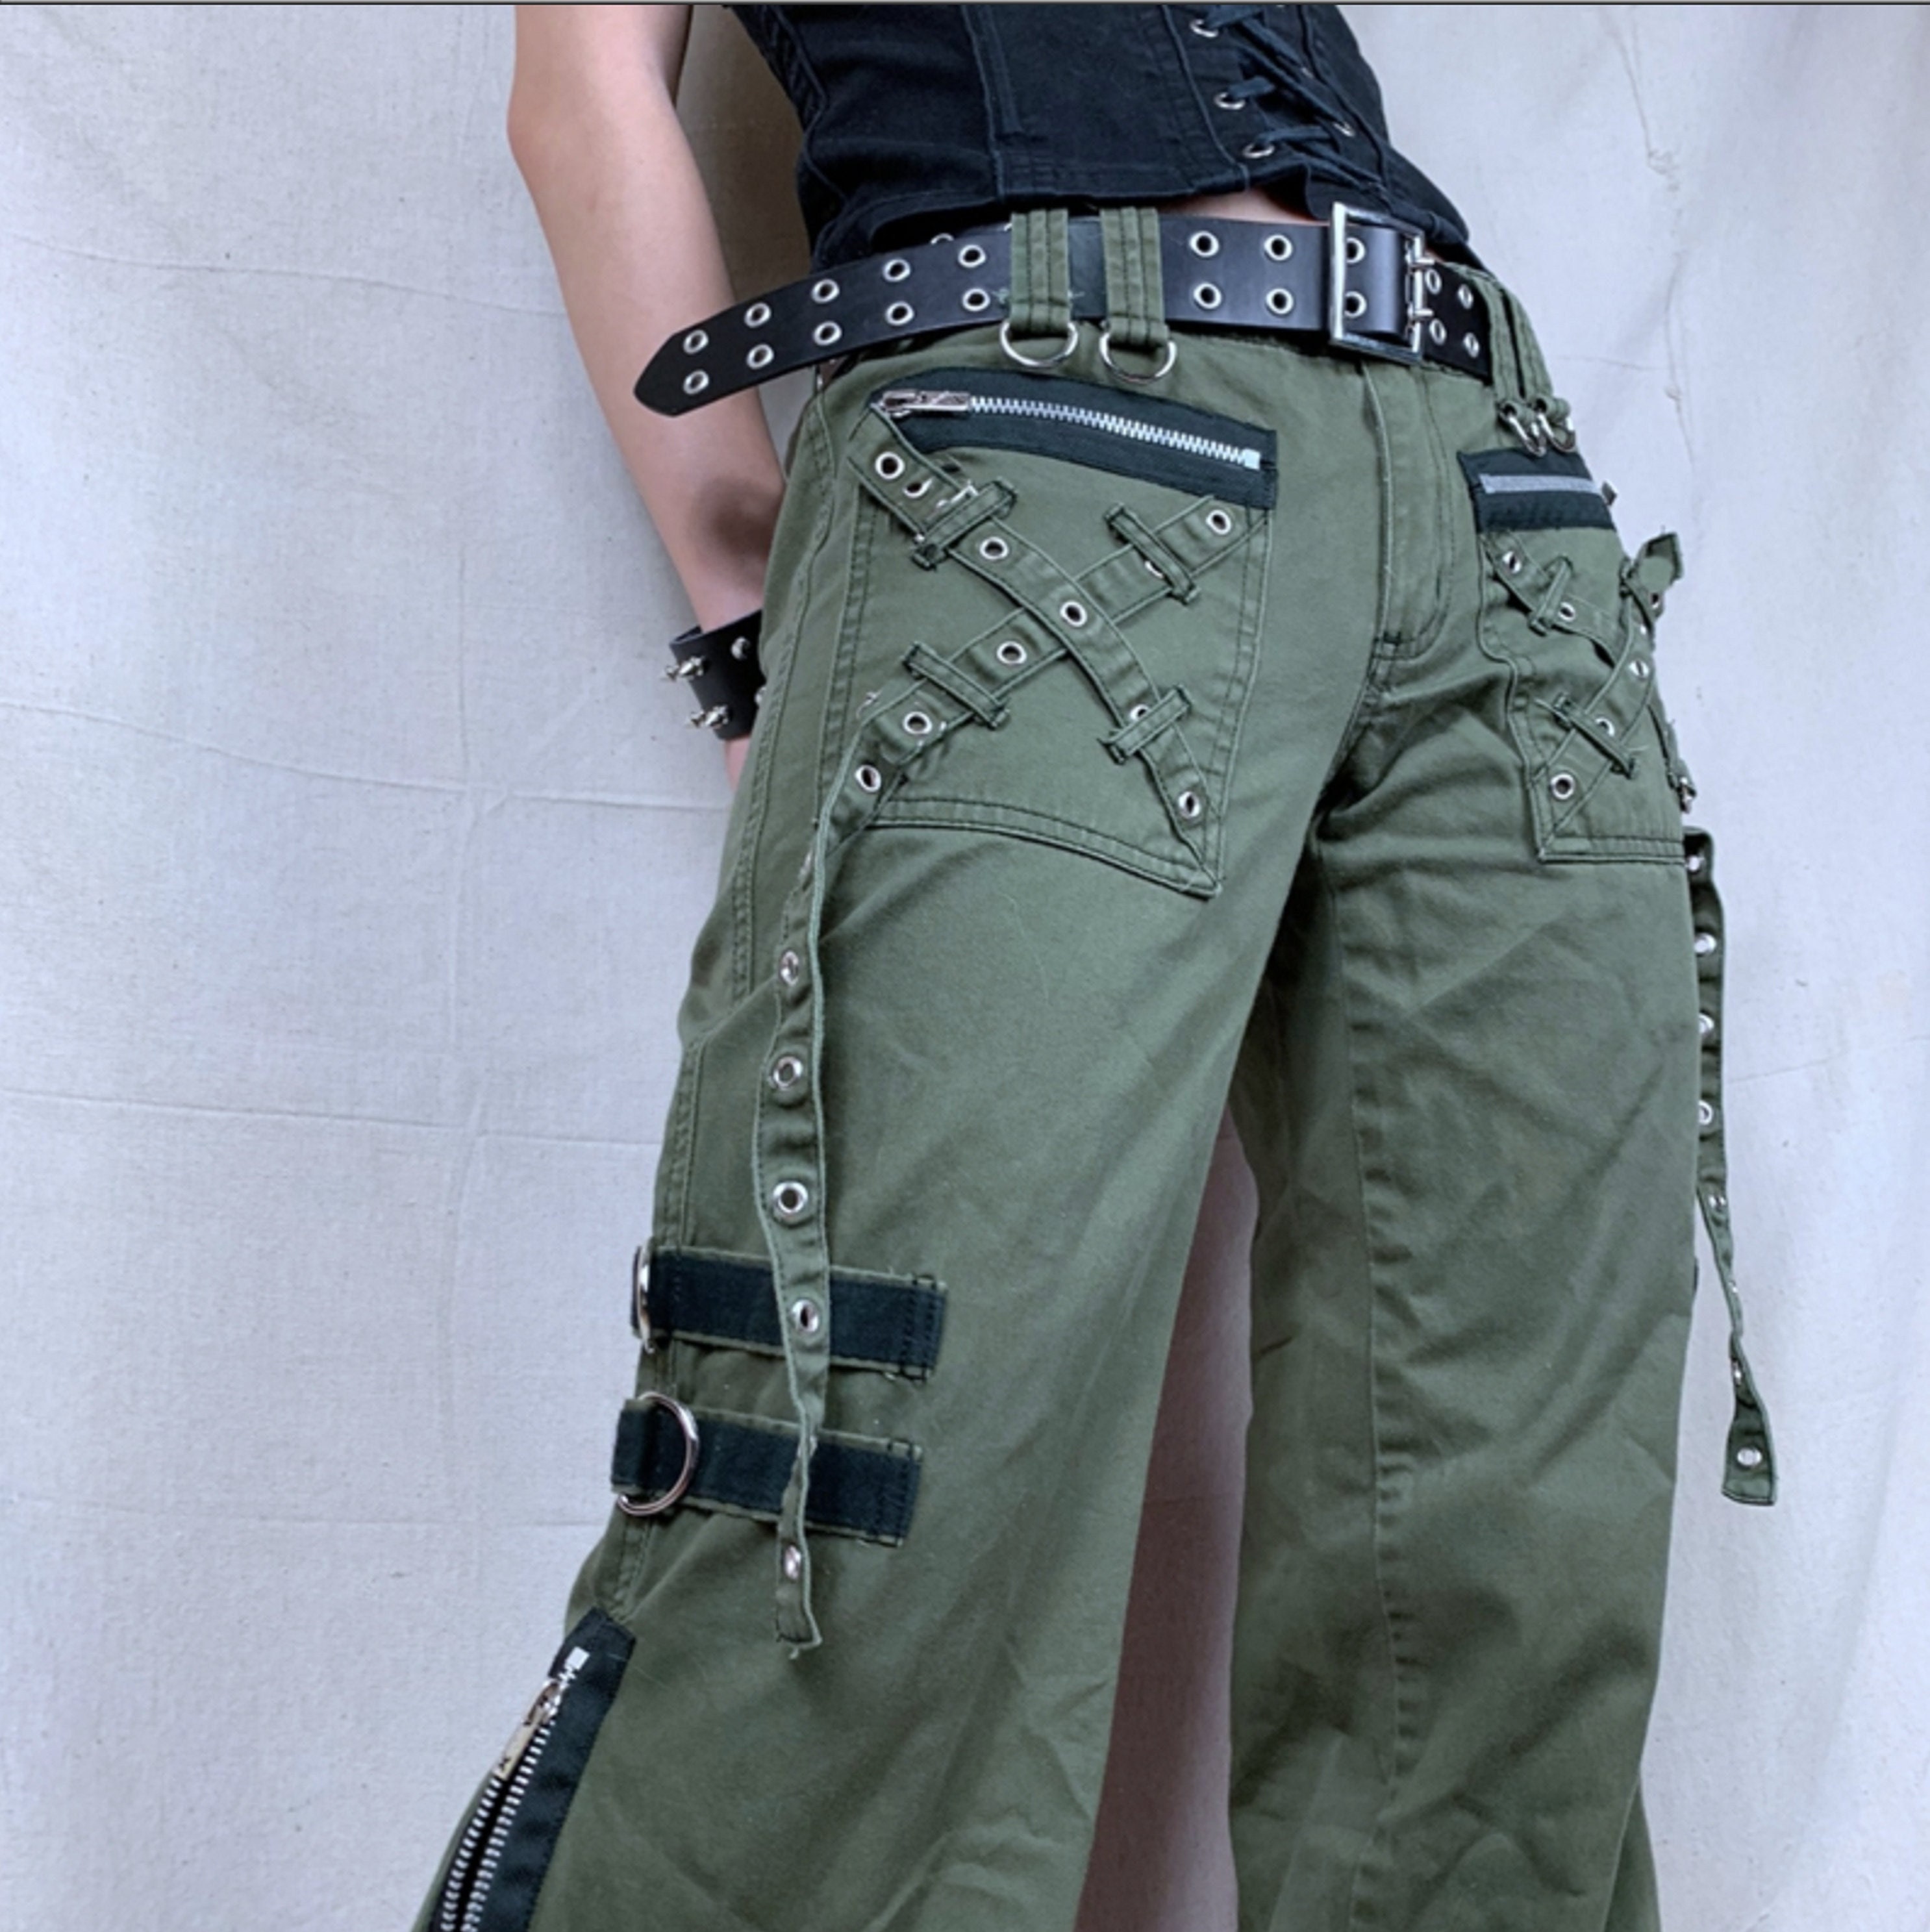 Men's Punk Cargo Pants With Chains – Punk Design